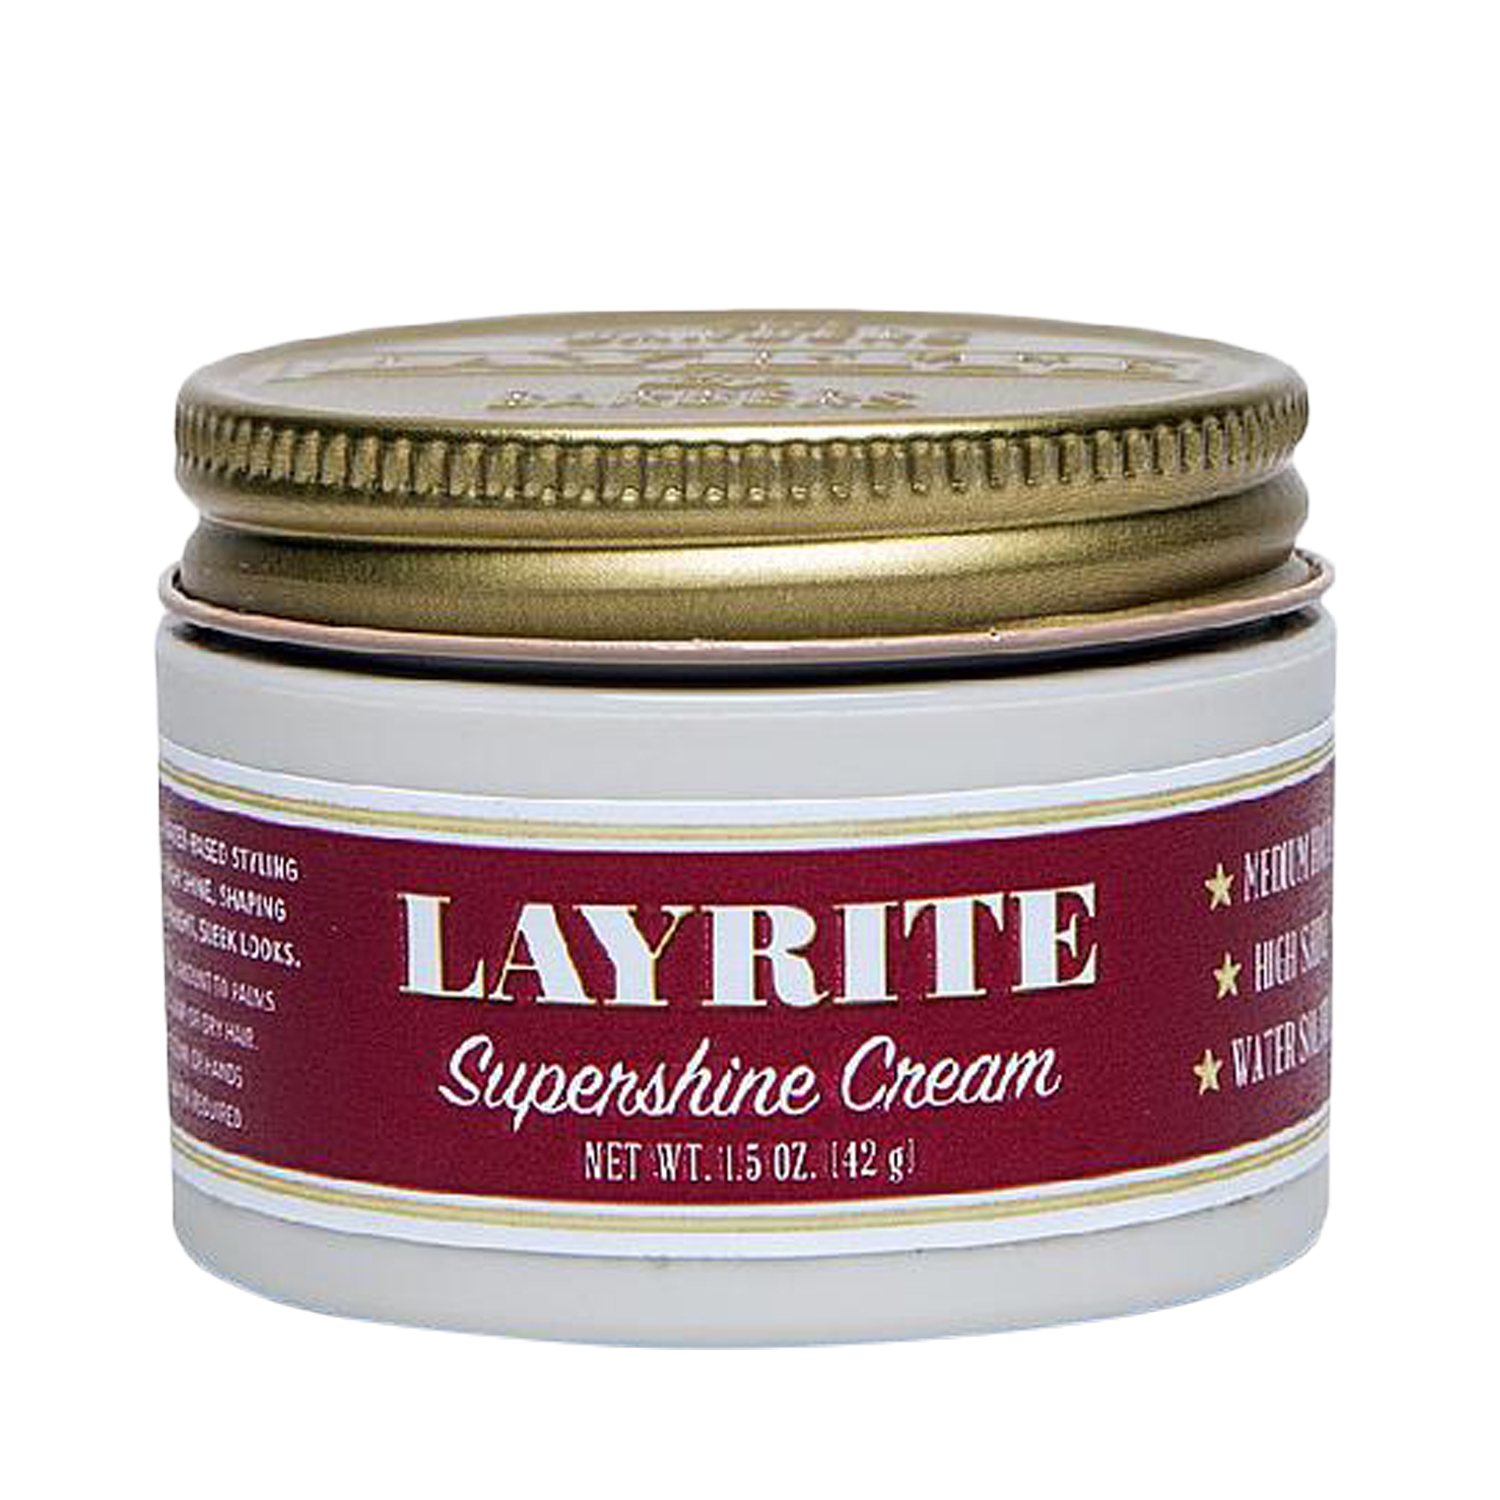 Layrite - Supershine Cream - Glanzgel - mittlerer Halt, hoher Glanz, wasserlöslich